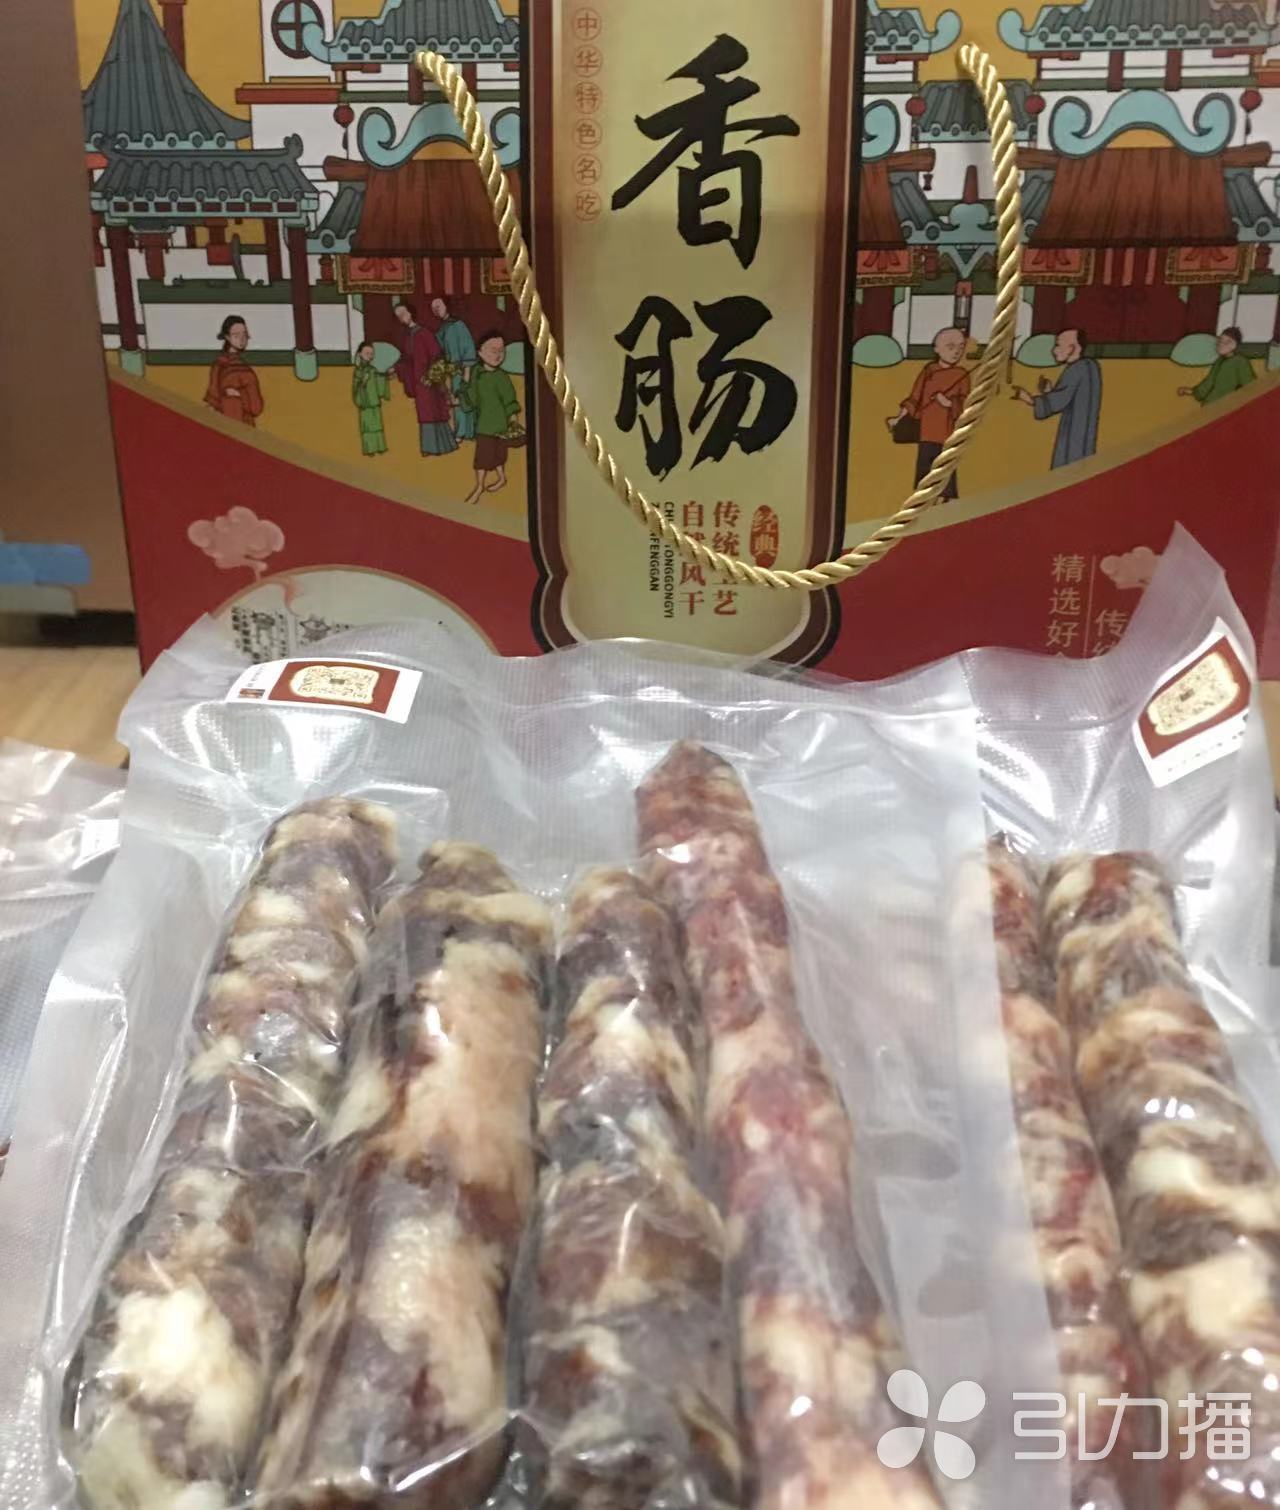 春节临近猪肉价格下降 市民吃肉蛮实惠